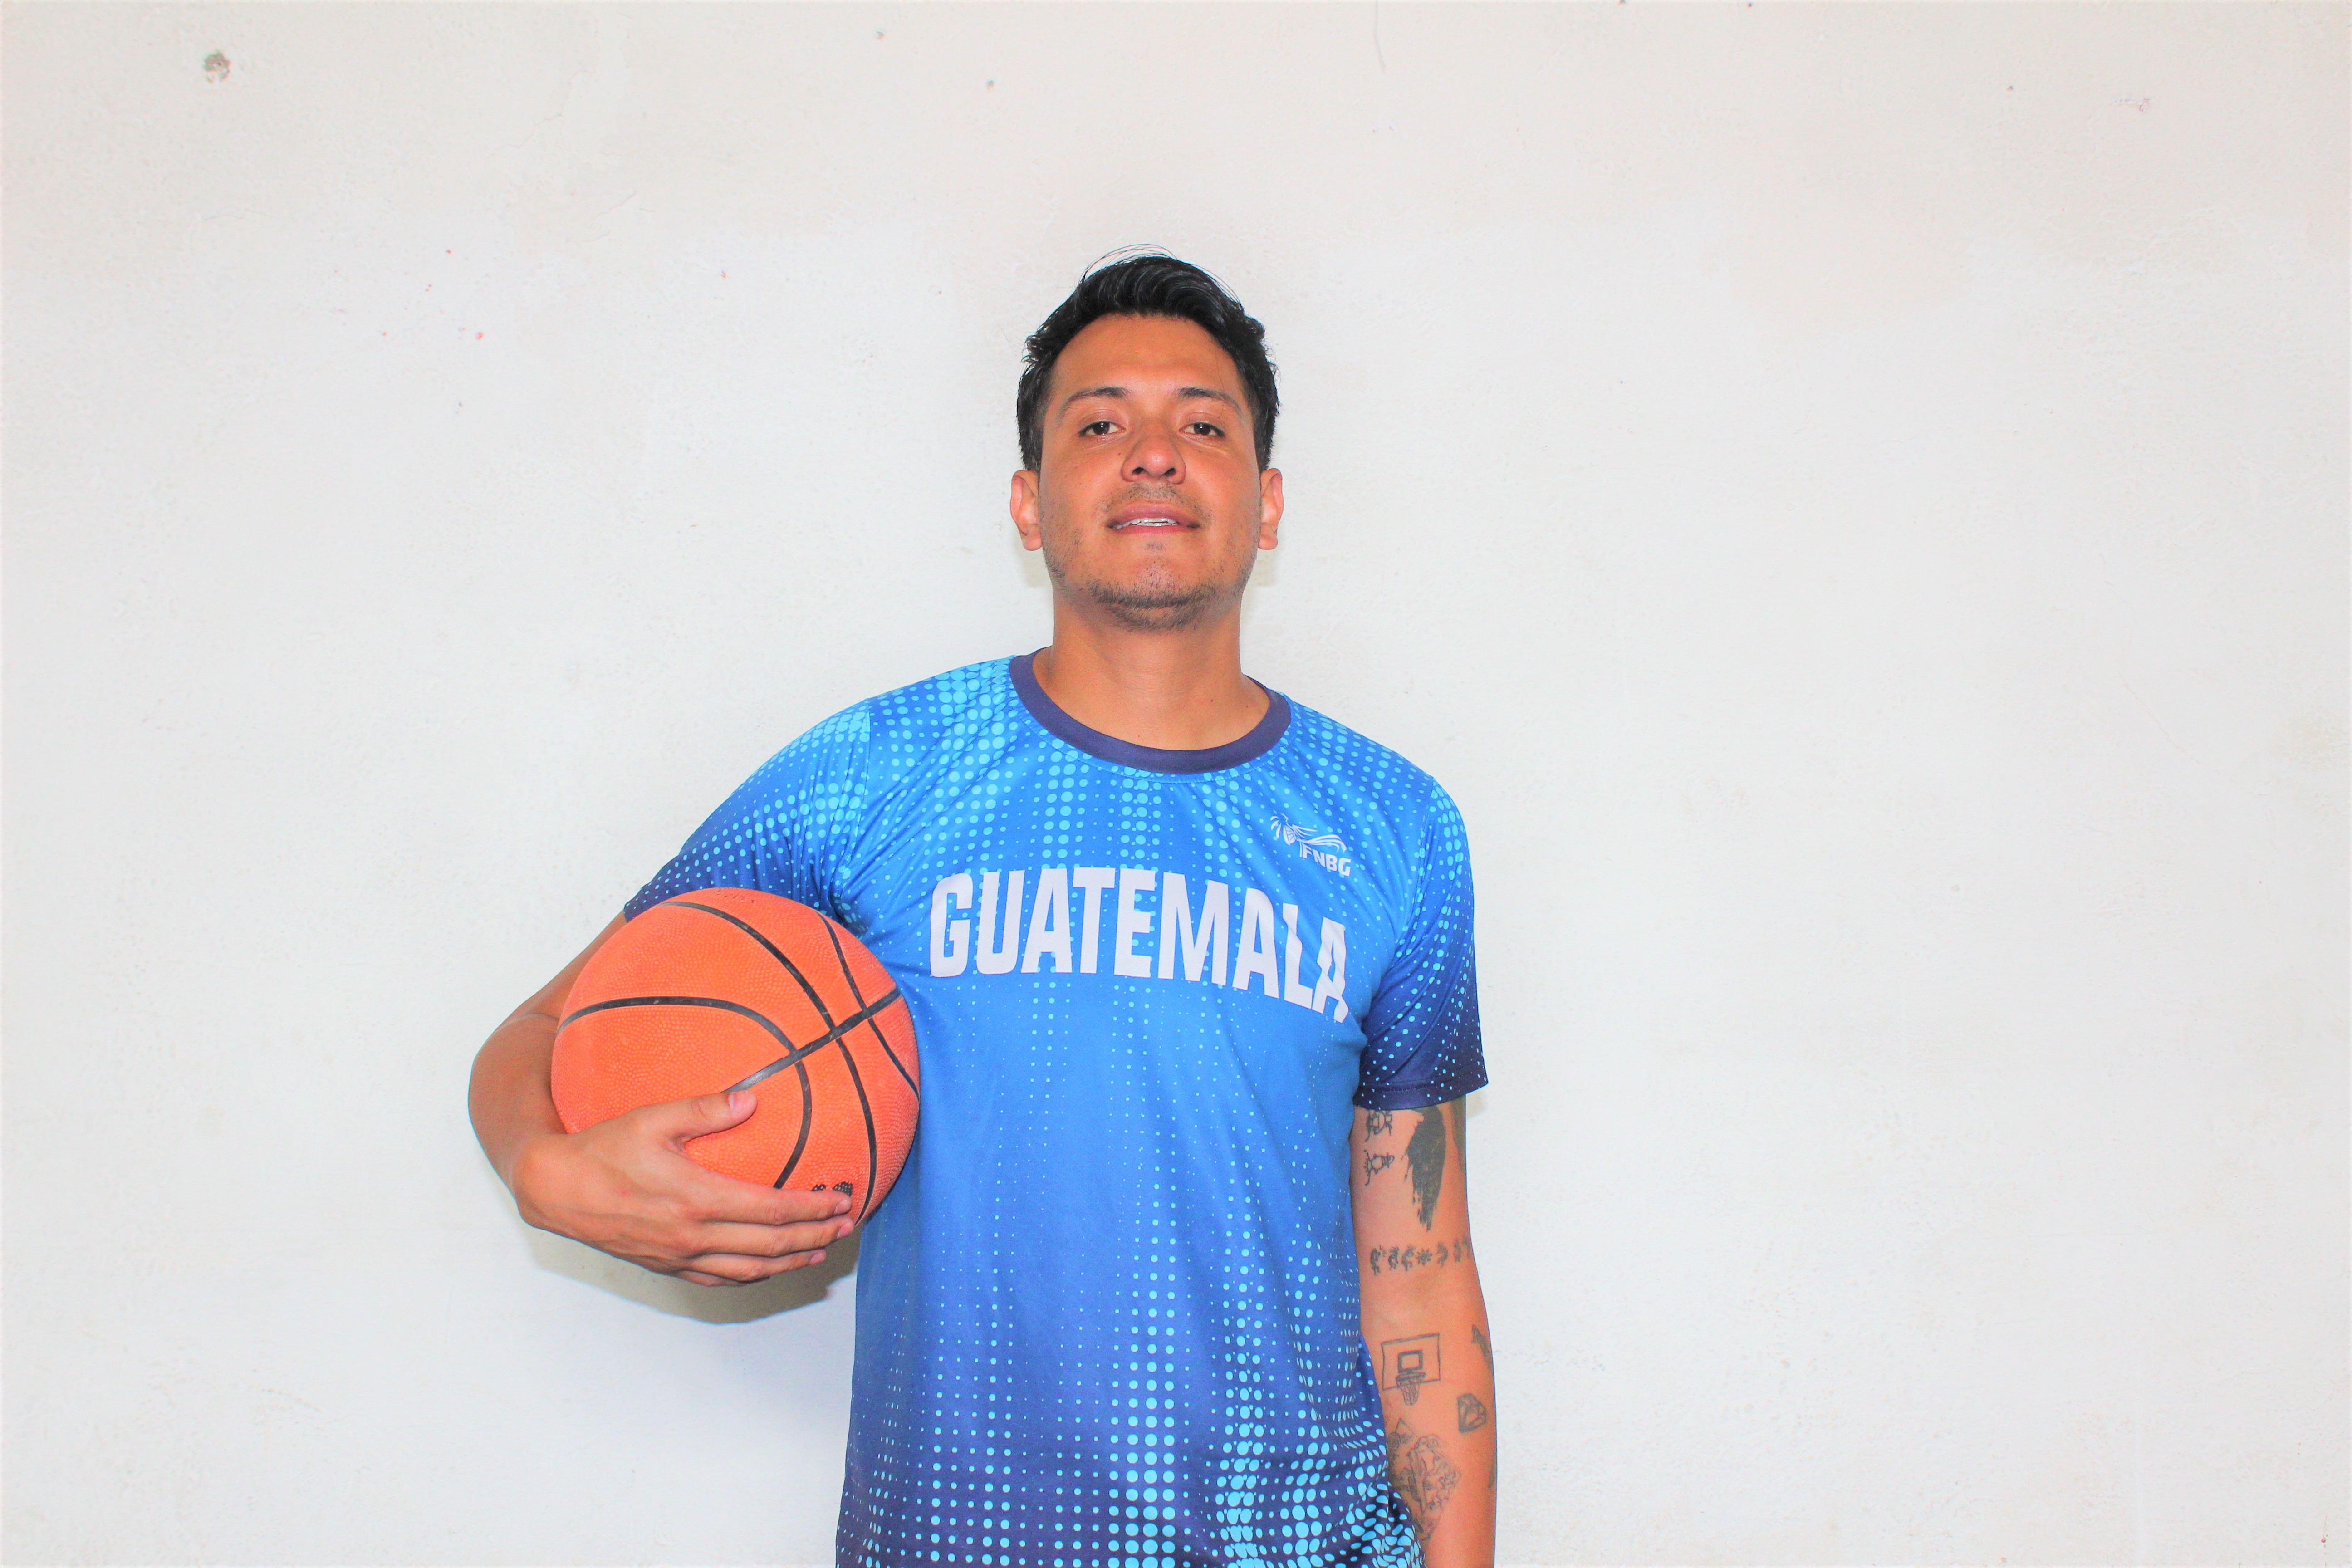 Triunfa poblano al frente del selectivo de basquetbol en Guatemala